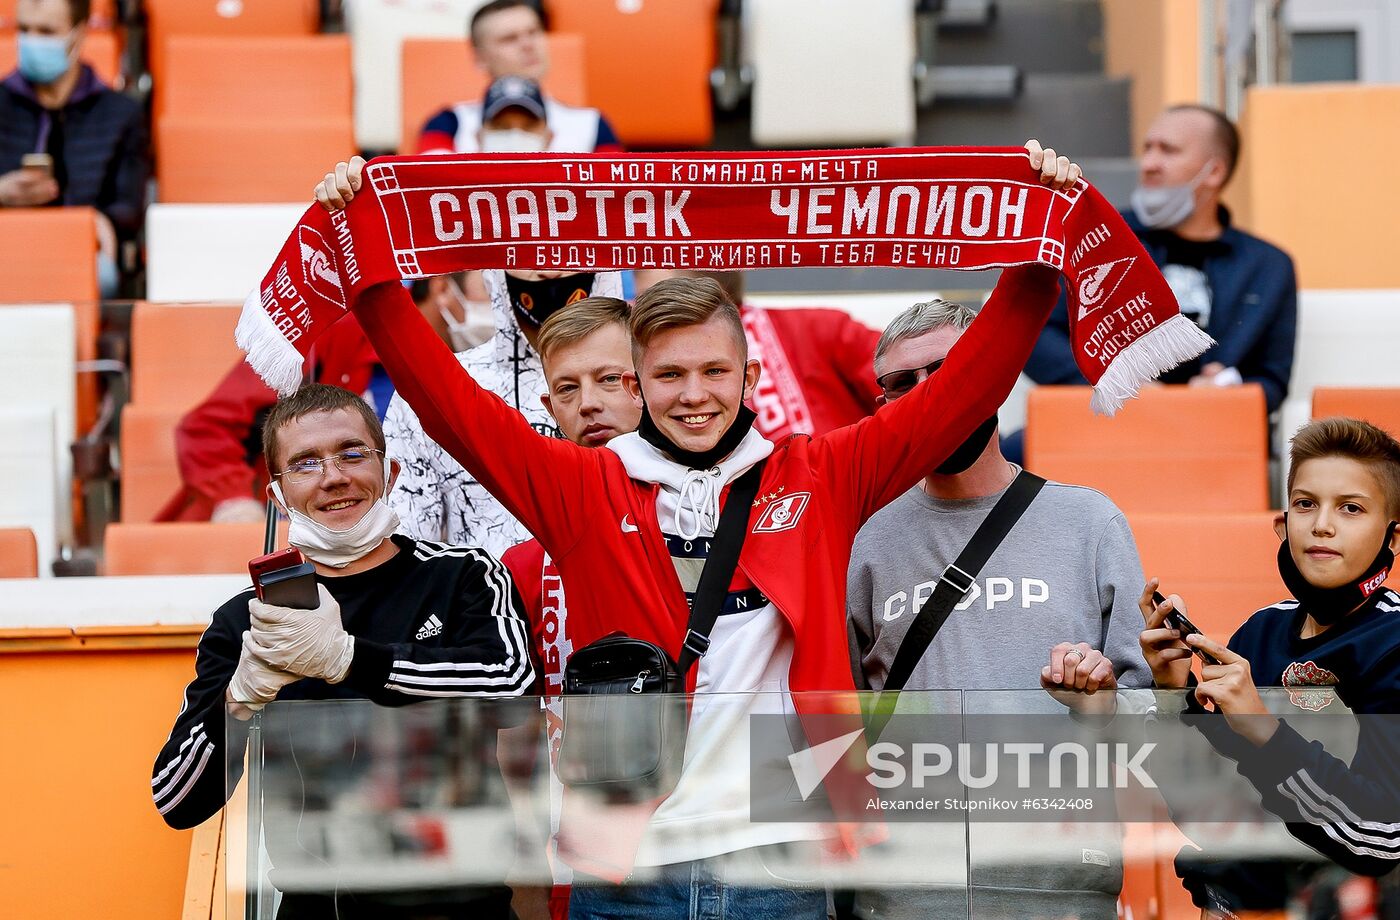 Russia Soccer Premier-League Tambov - Spartak